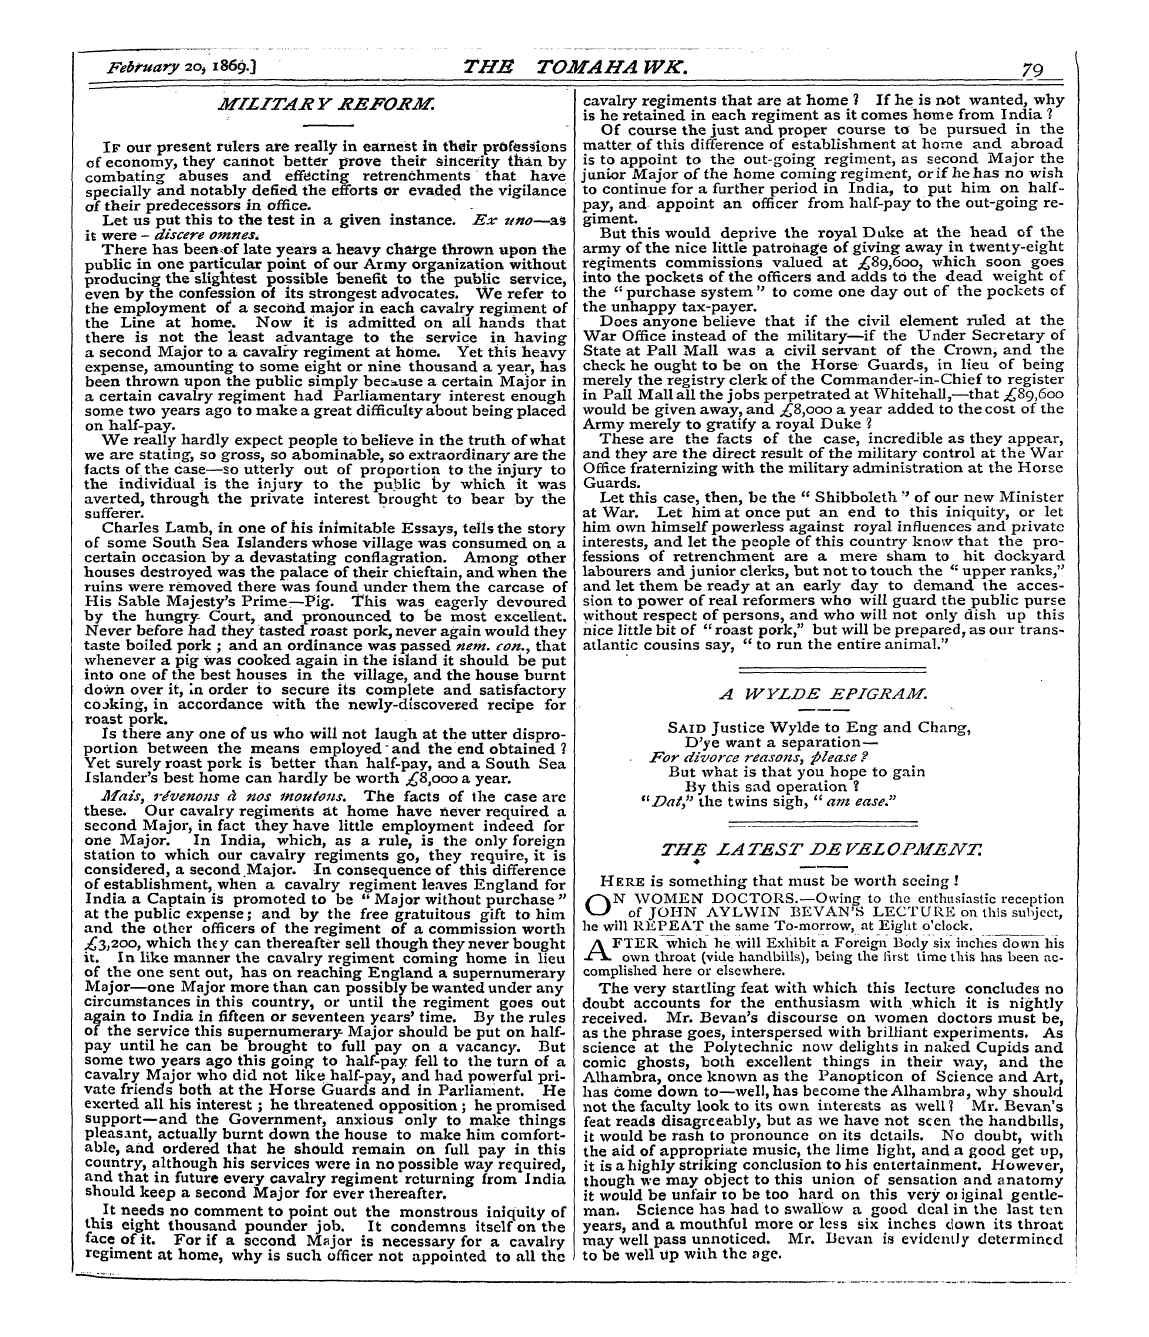 Tomahawk (1867-1870): jS F Y, 1st edition - Mtlitar Y Kefokm.